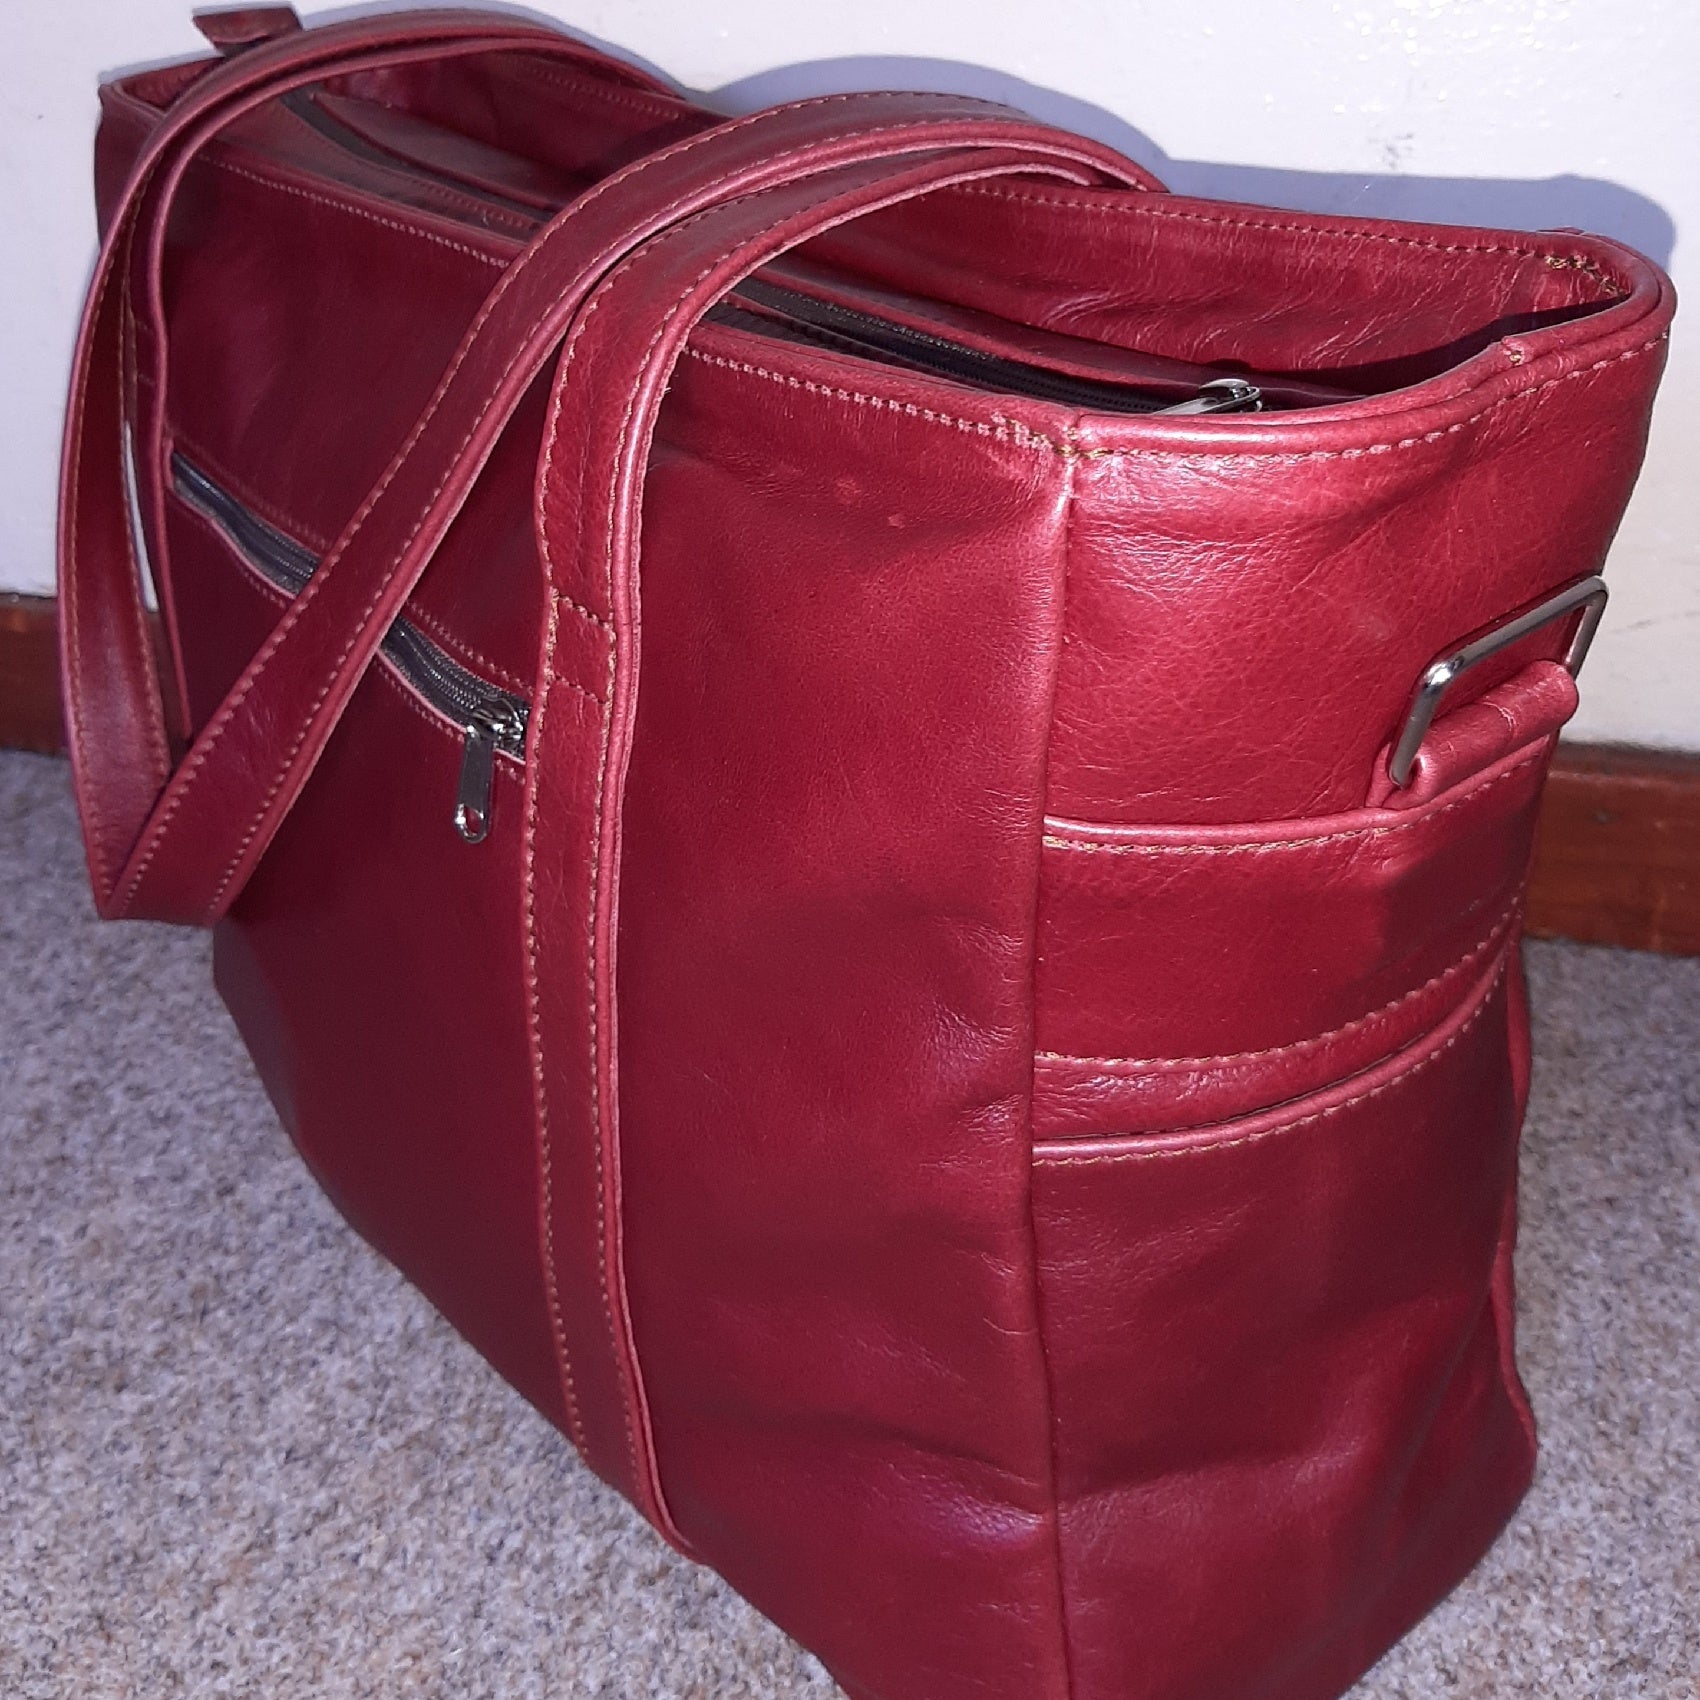 Ladies laptop bags xl - cape Masai leather 